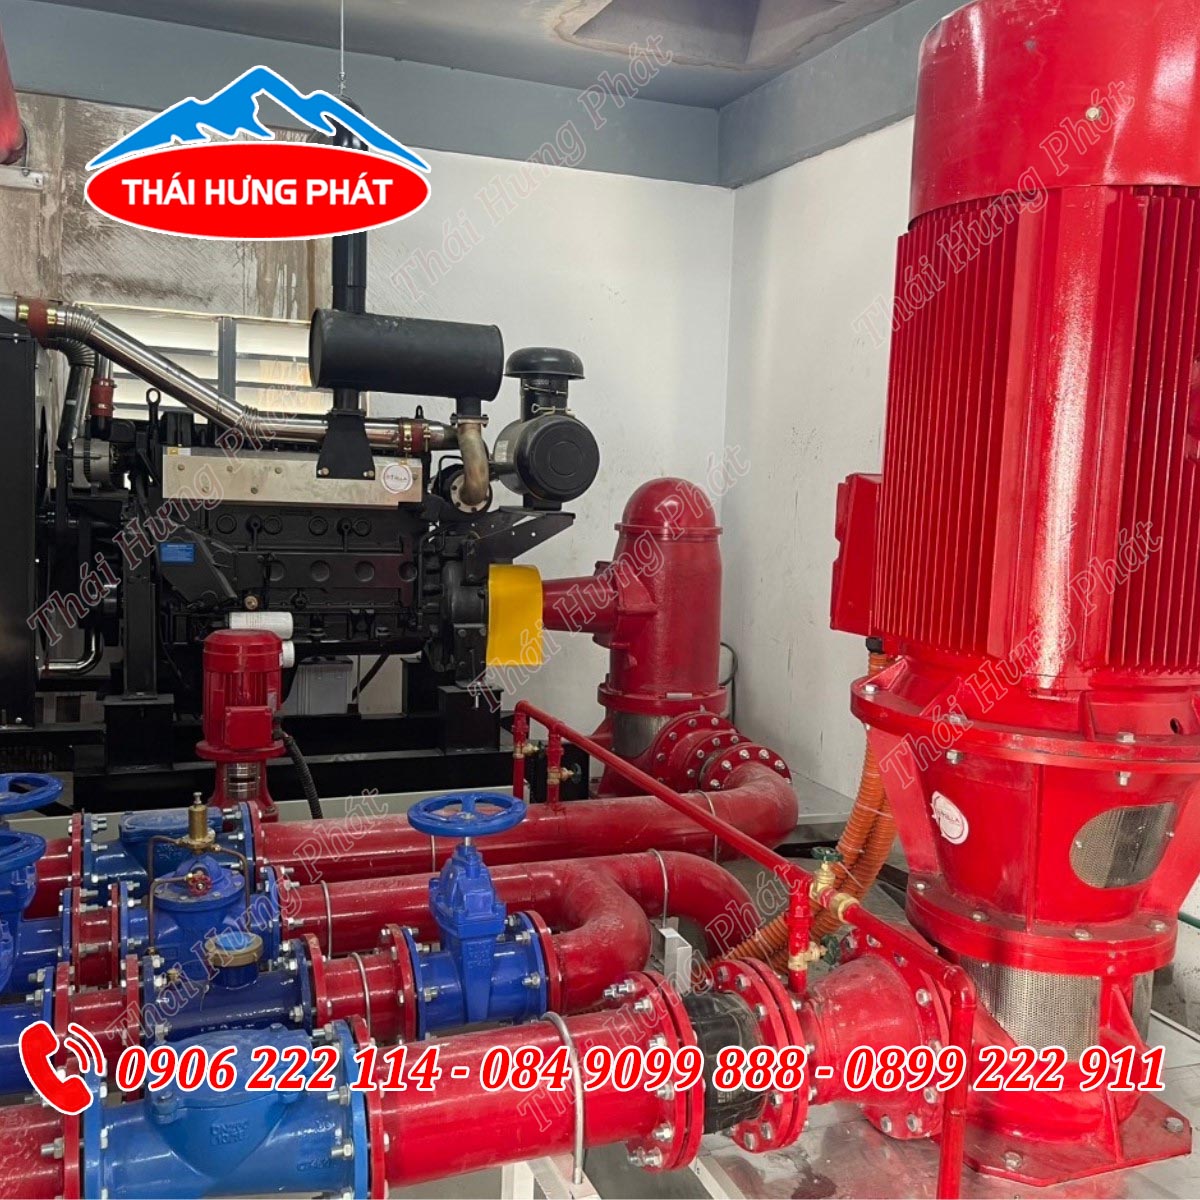 Đơn vị sản xuất máy bơm chữa cháy chất lượng Thái Hưng Phát